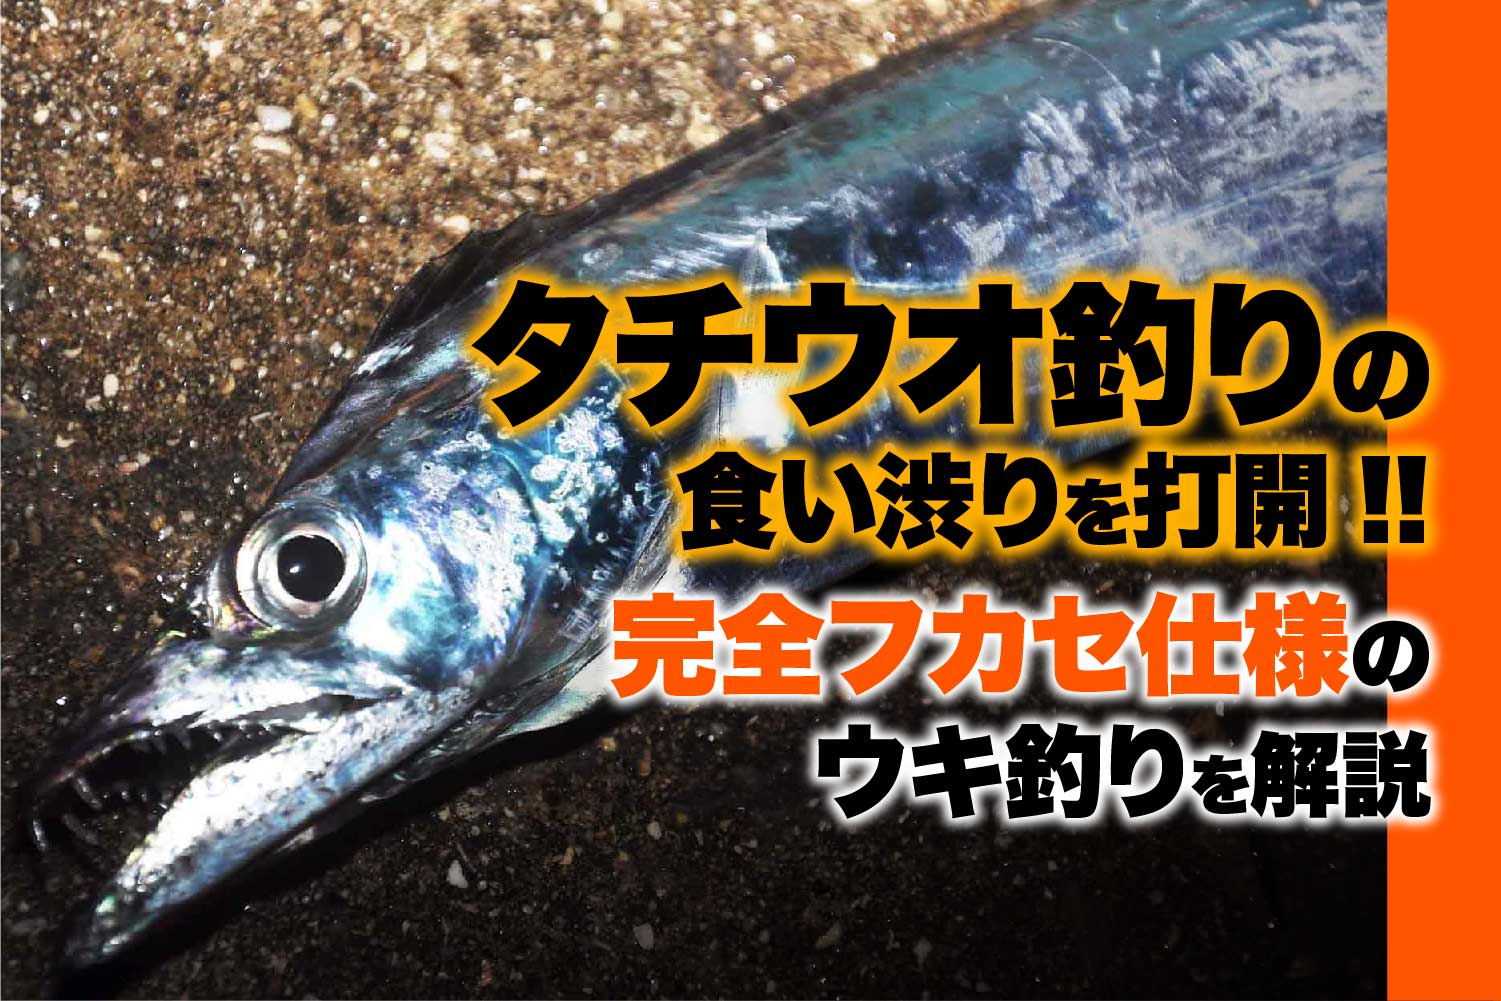 タチウオ 太刀魚 関西のつりweb 釣りの総合情報メディアmeme